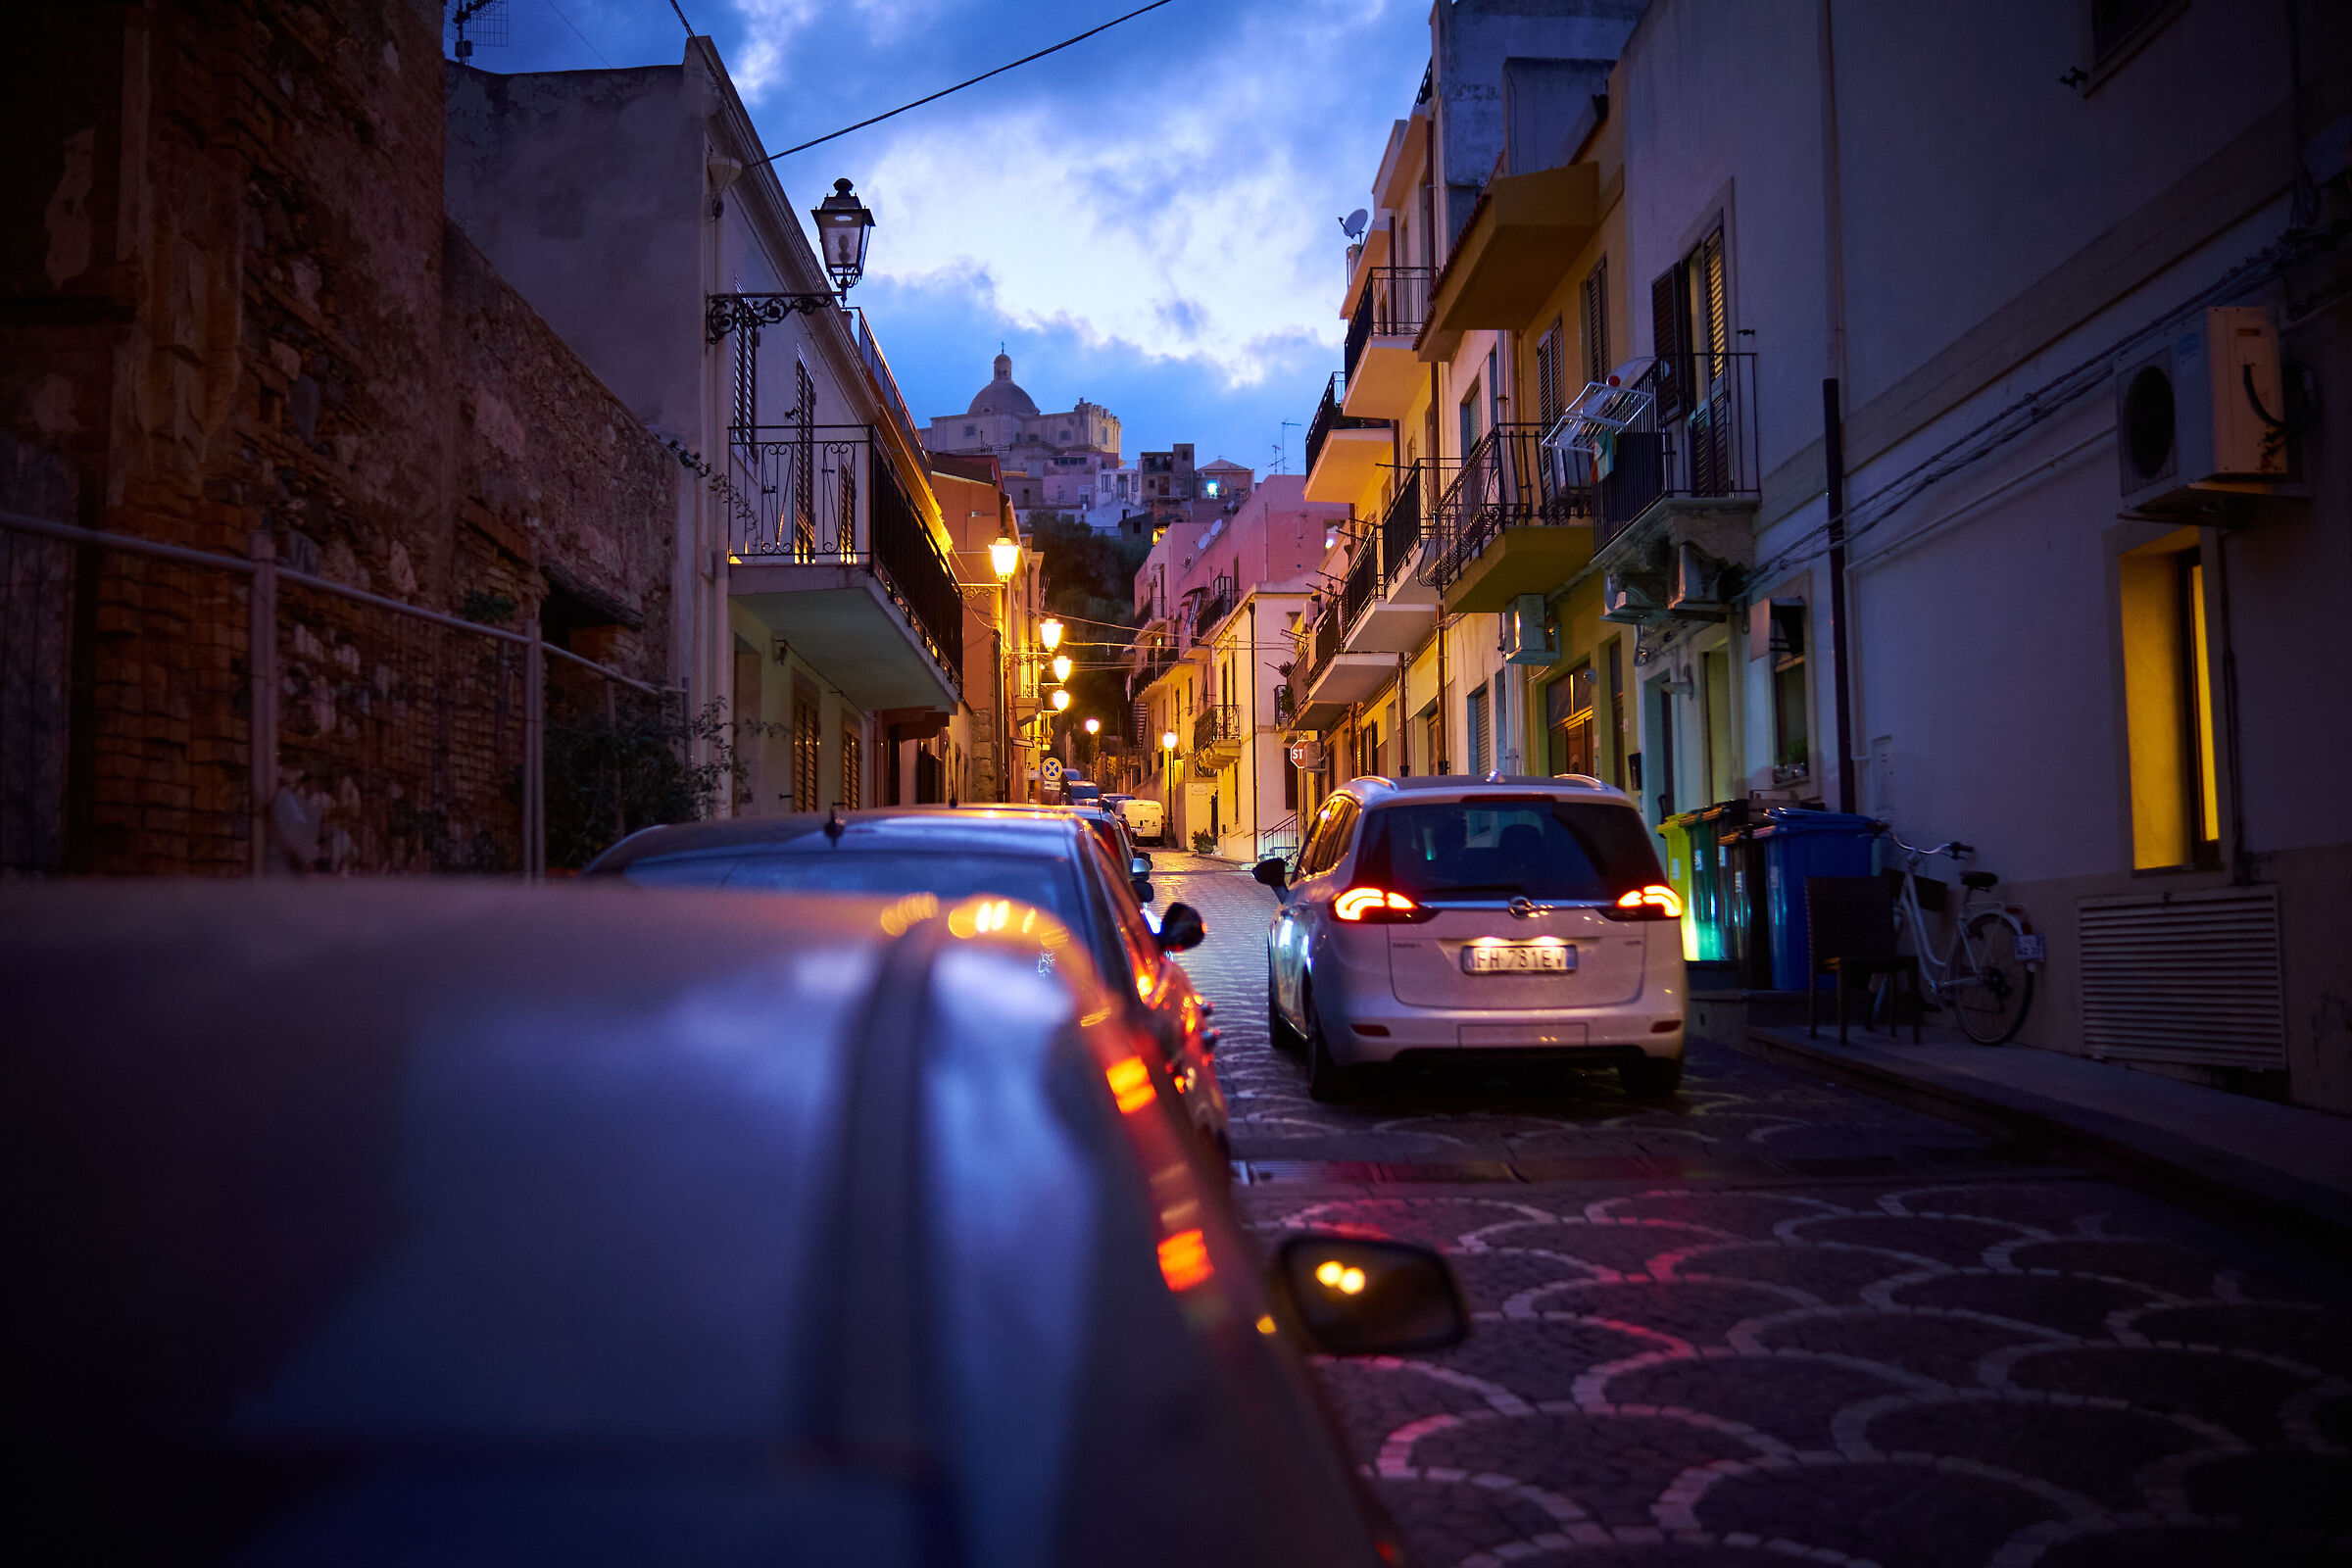 Narrow streets of Sicily...